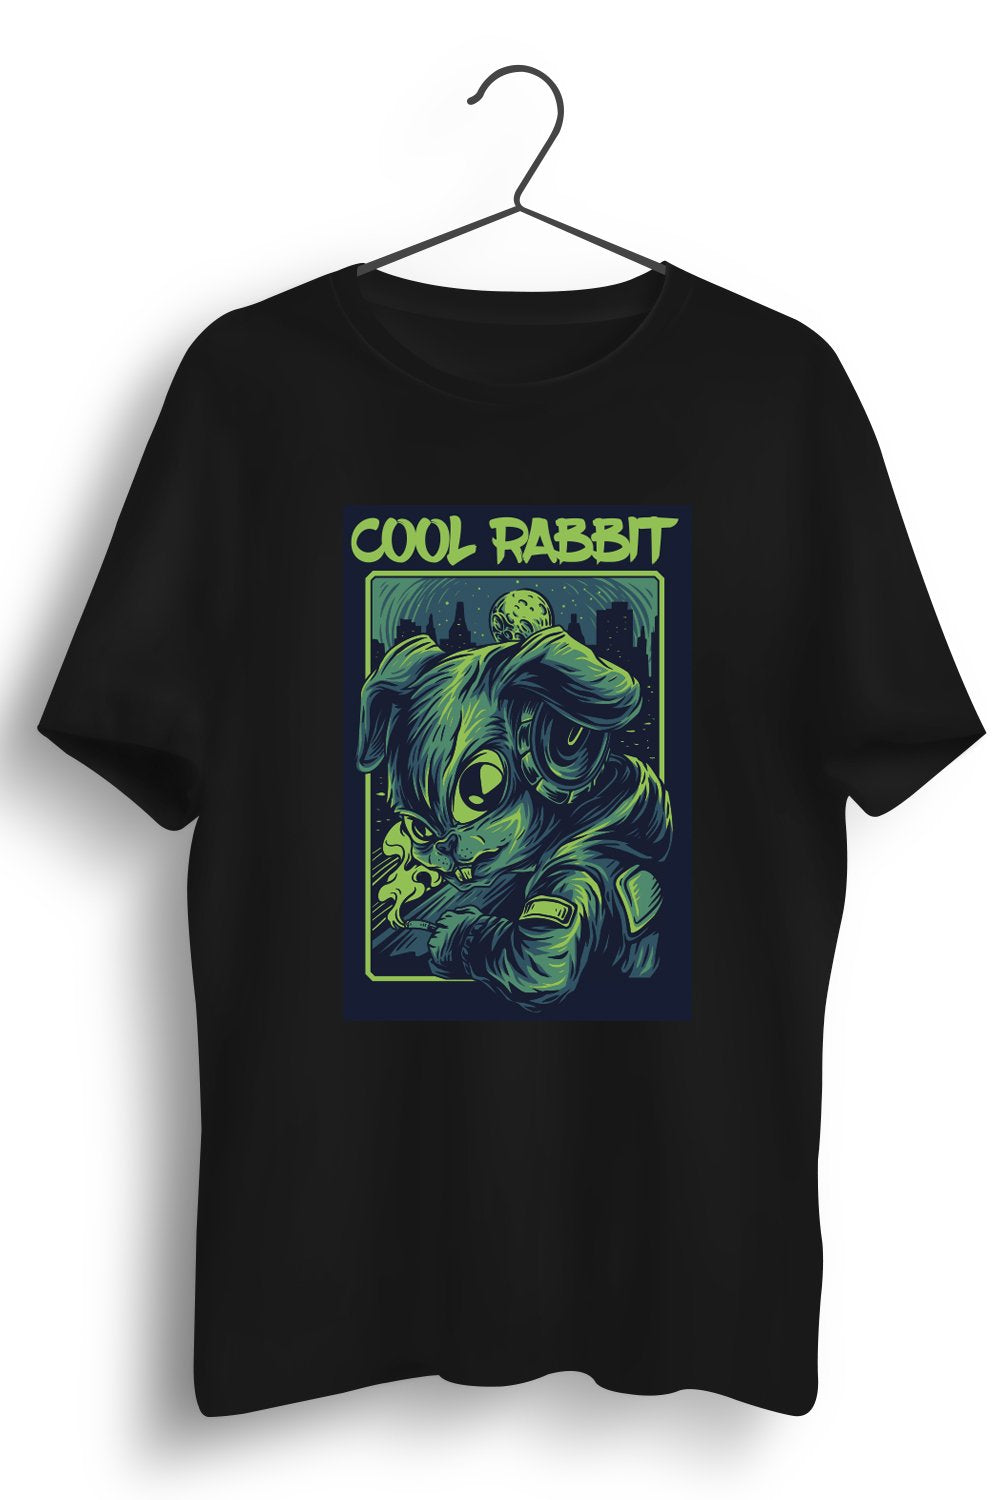 Cool Rabbit Graphic Printed Black Tshirt